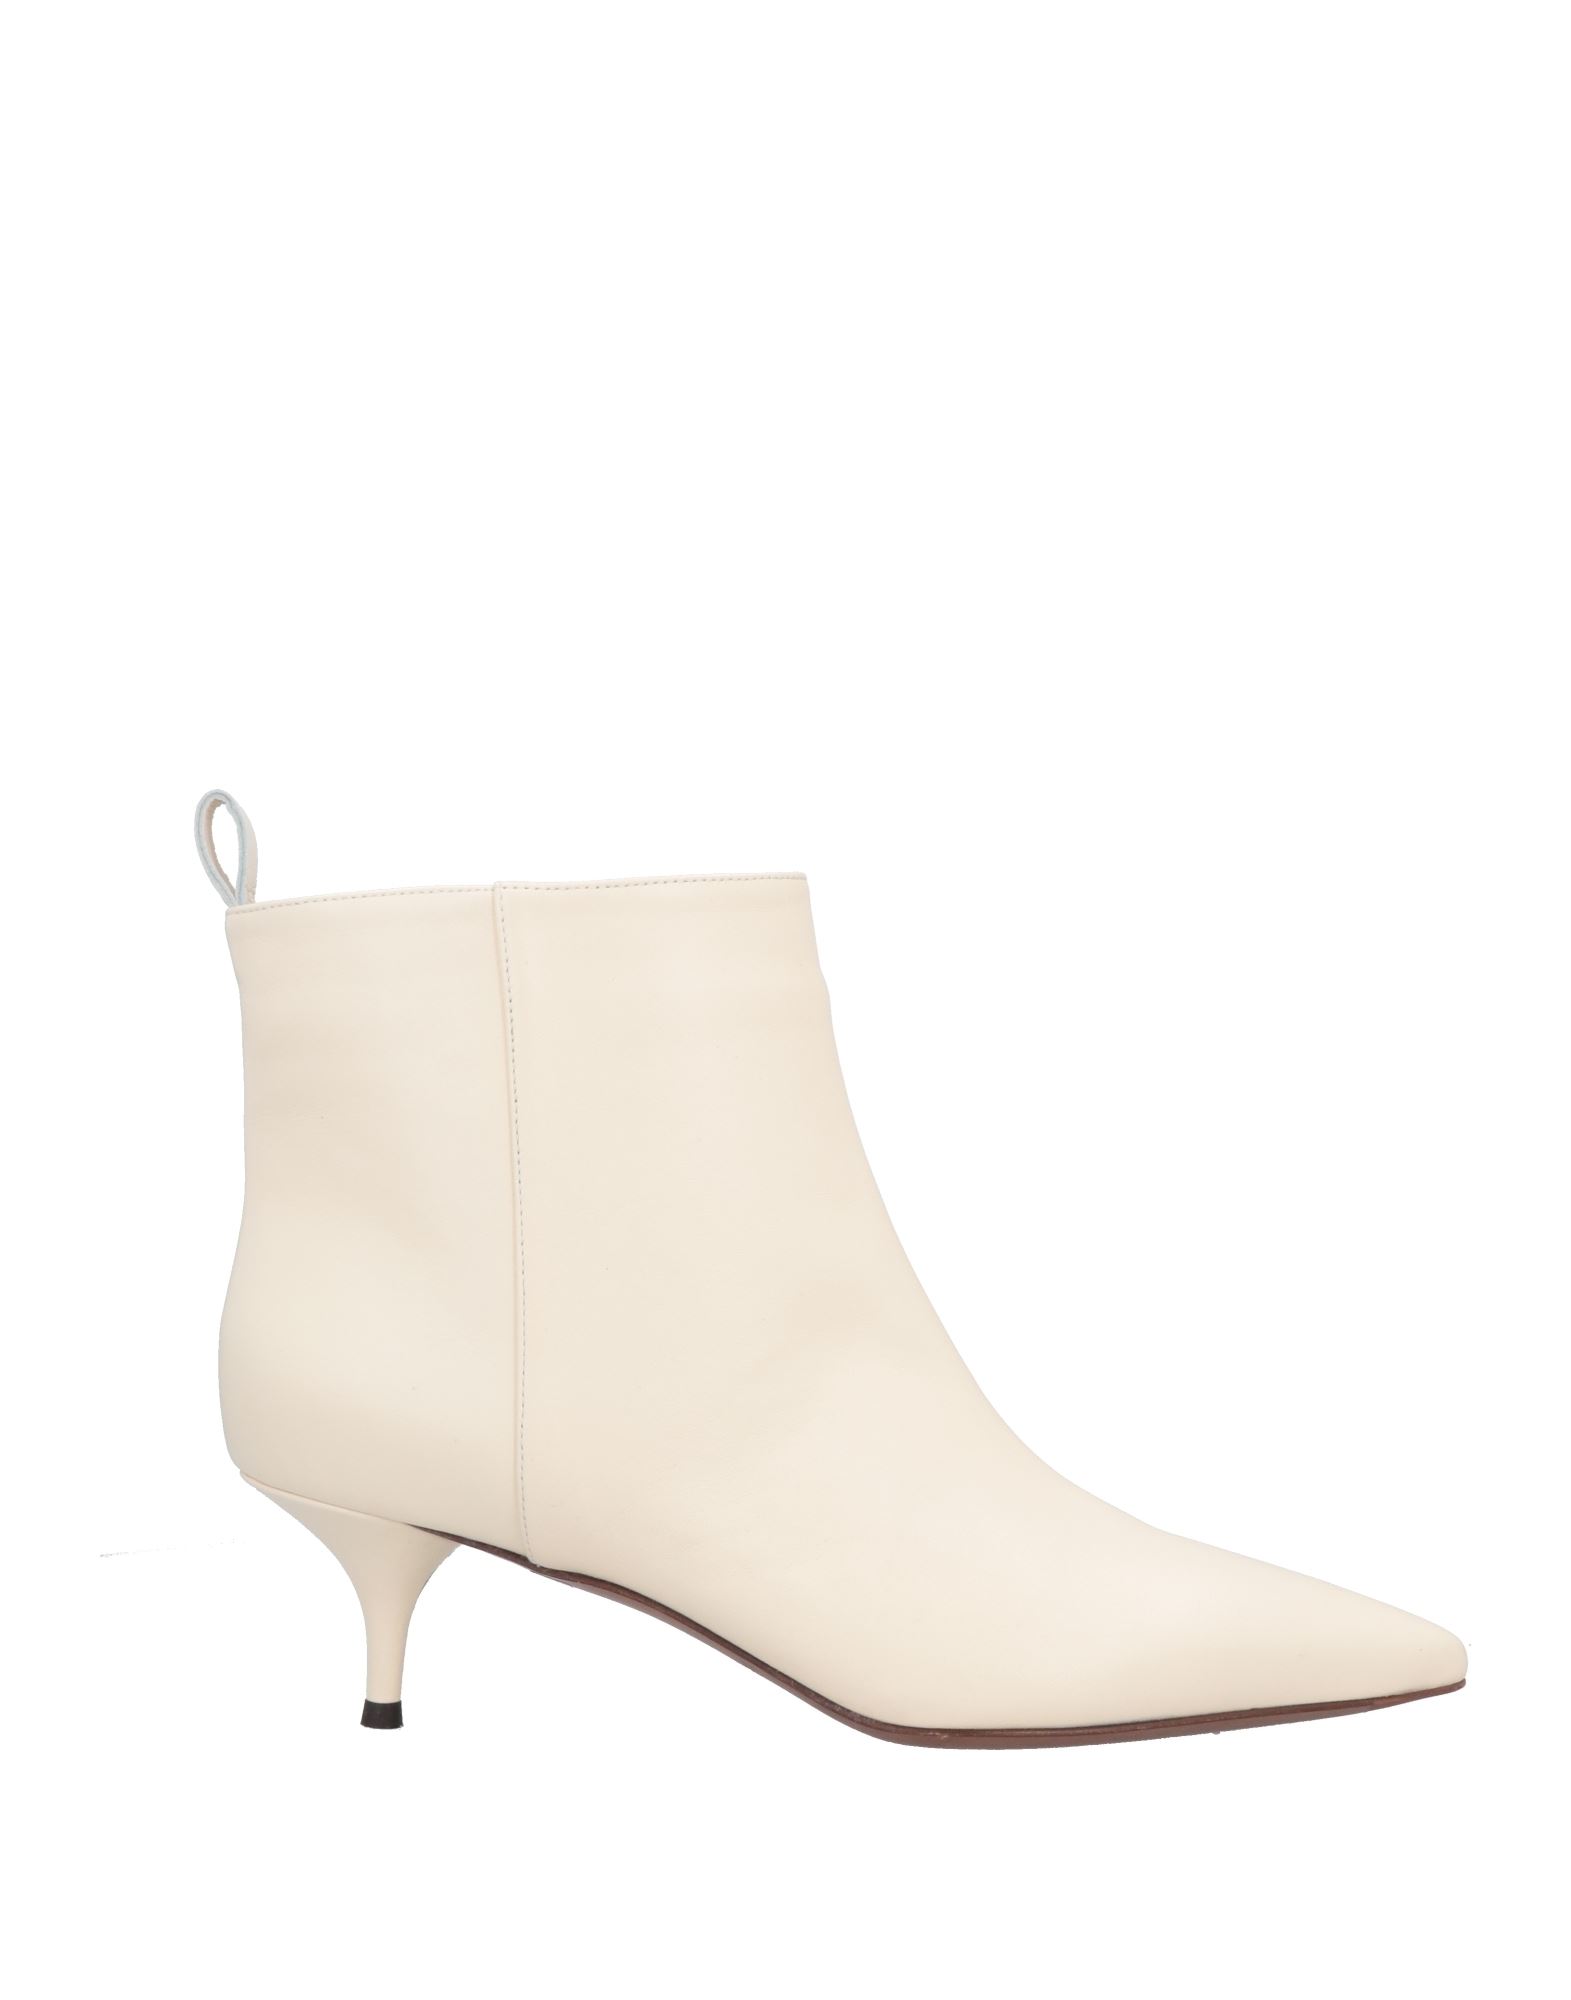 L'autre Chose L' Autre Chose Woman Ankle Boots Lead Size 10.5 Soft Leather In Grey